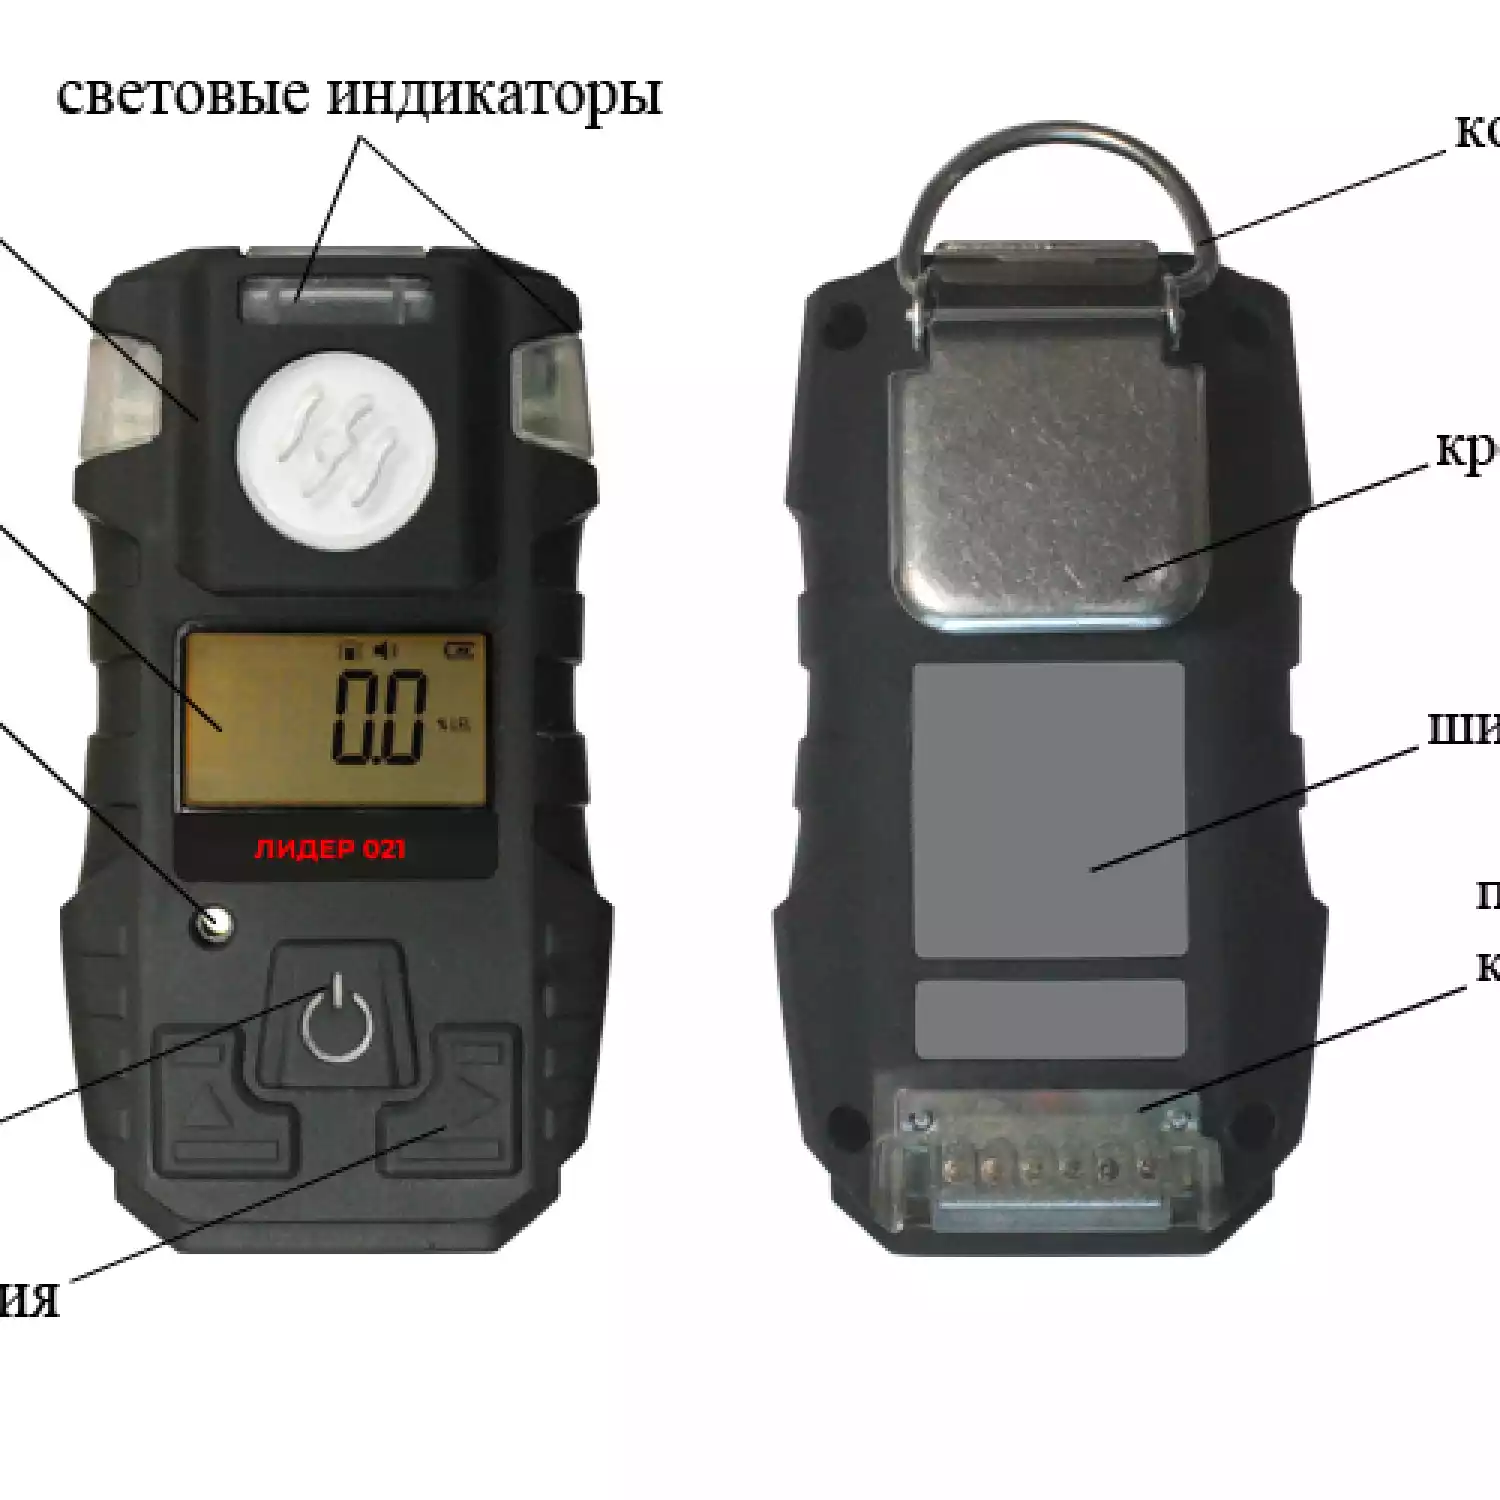 Газоанализатор портативный ЛИДЕР 021 (HCl) - 4